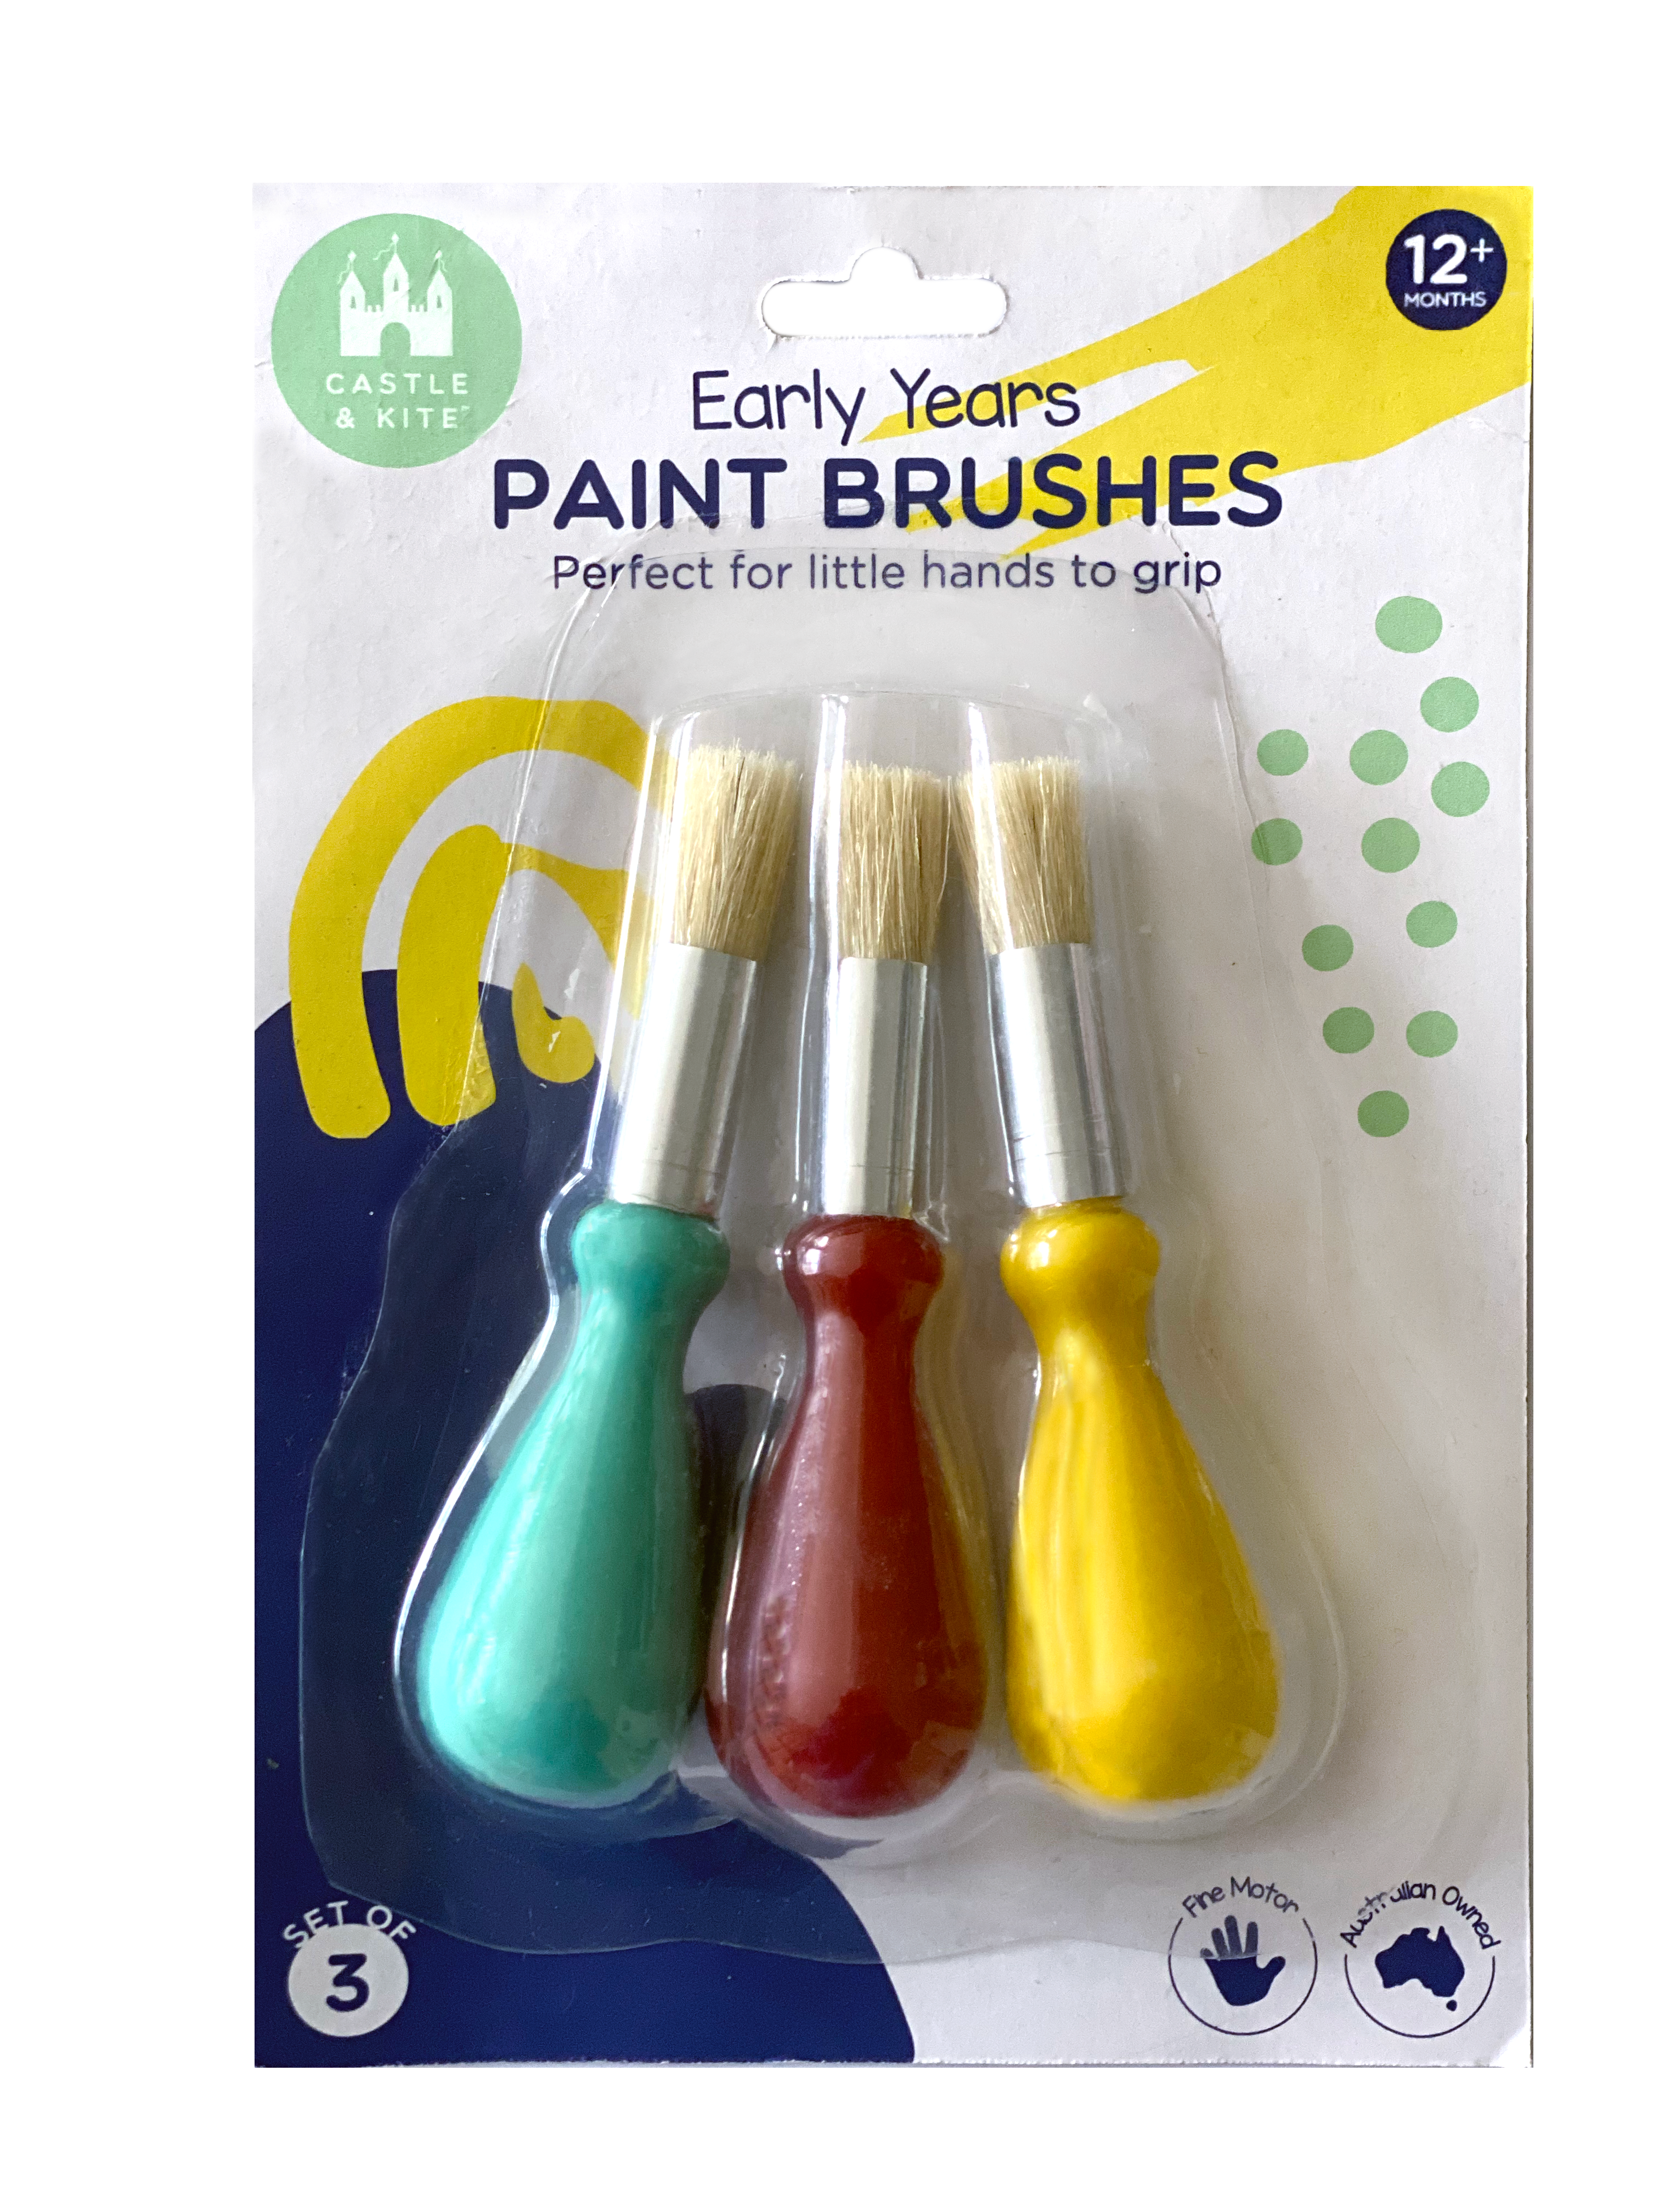 Castle &amp; Kite Paint Brushes